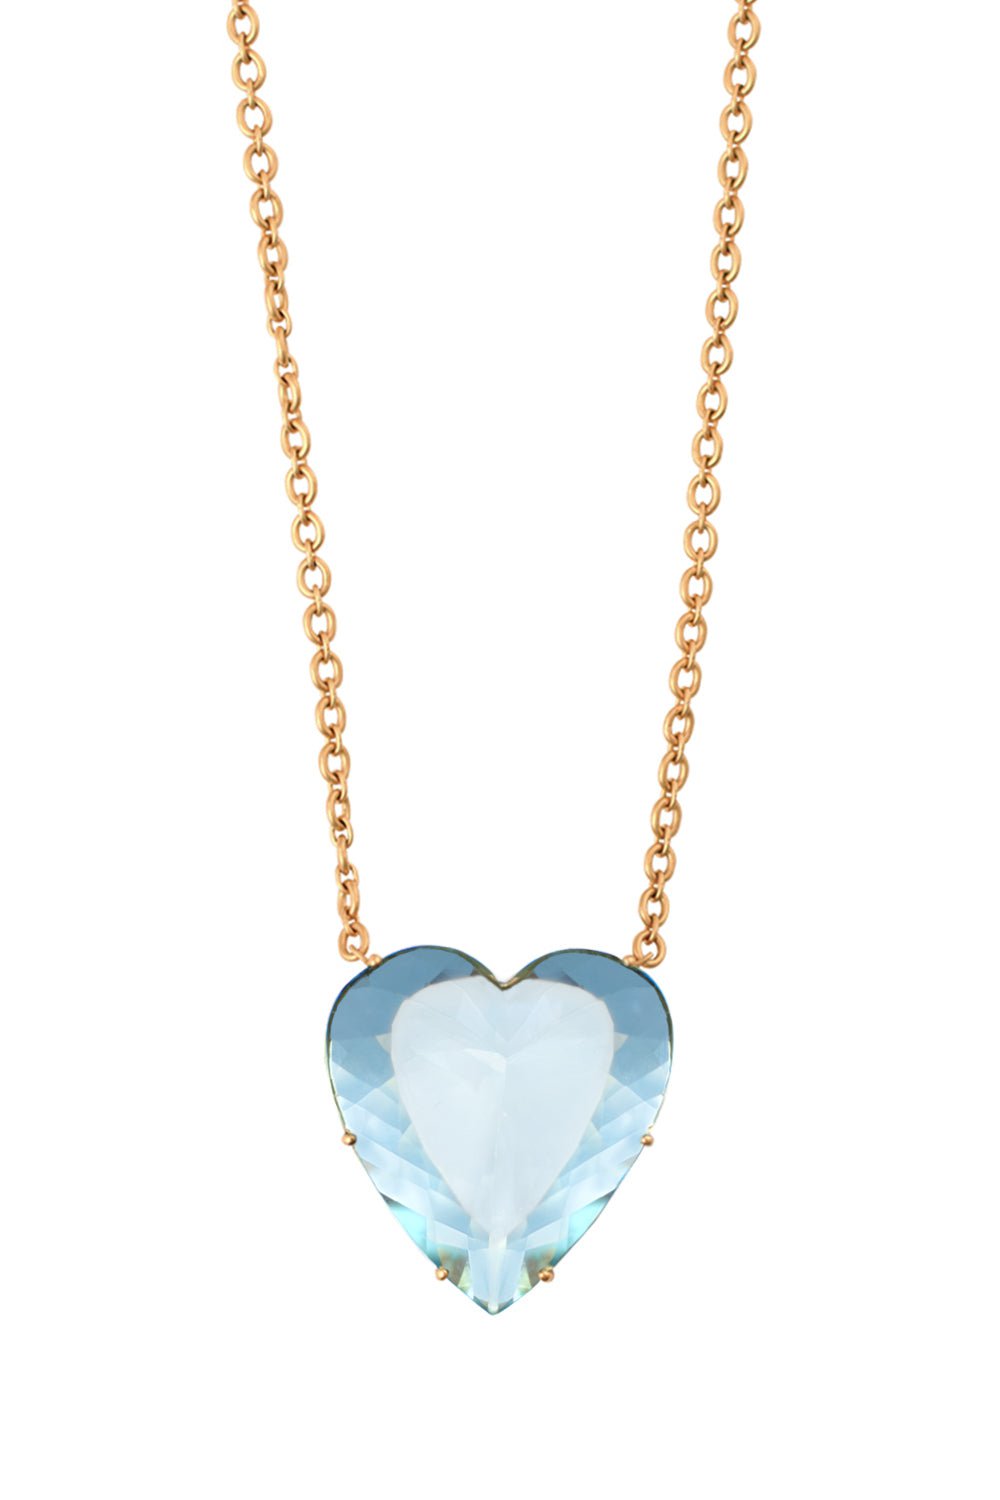 IRENE NEUWIRTH JEWELRY-Love Aquamarine Heart Necklace-YELLOW GOLD